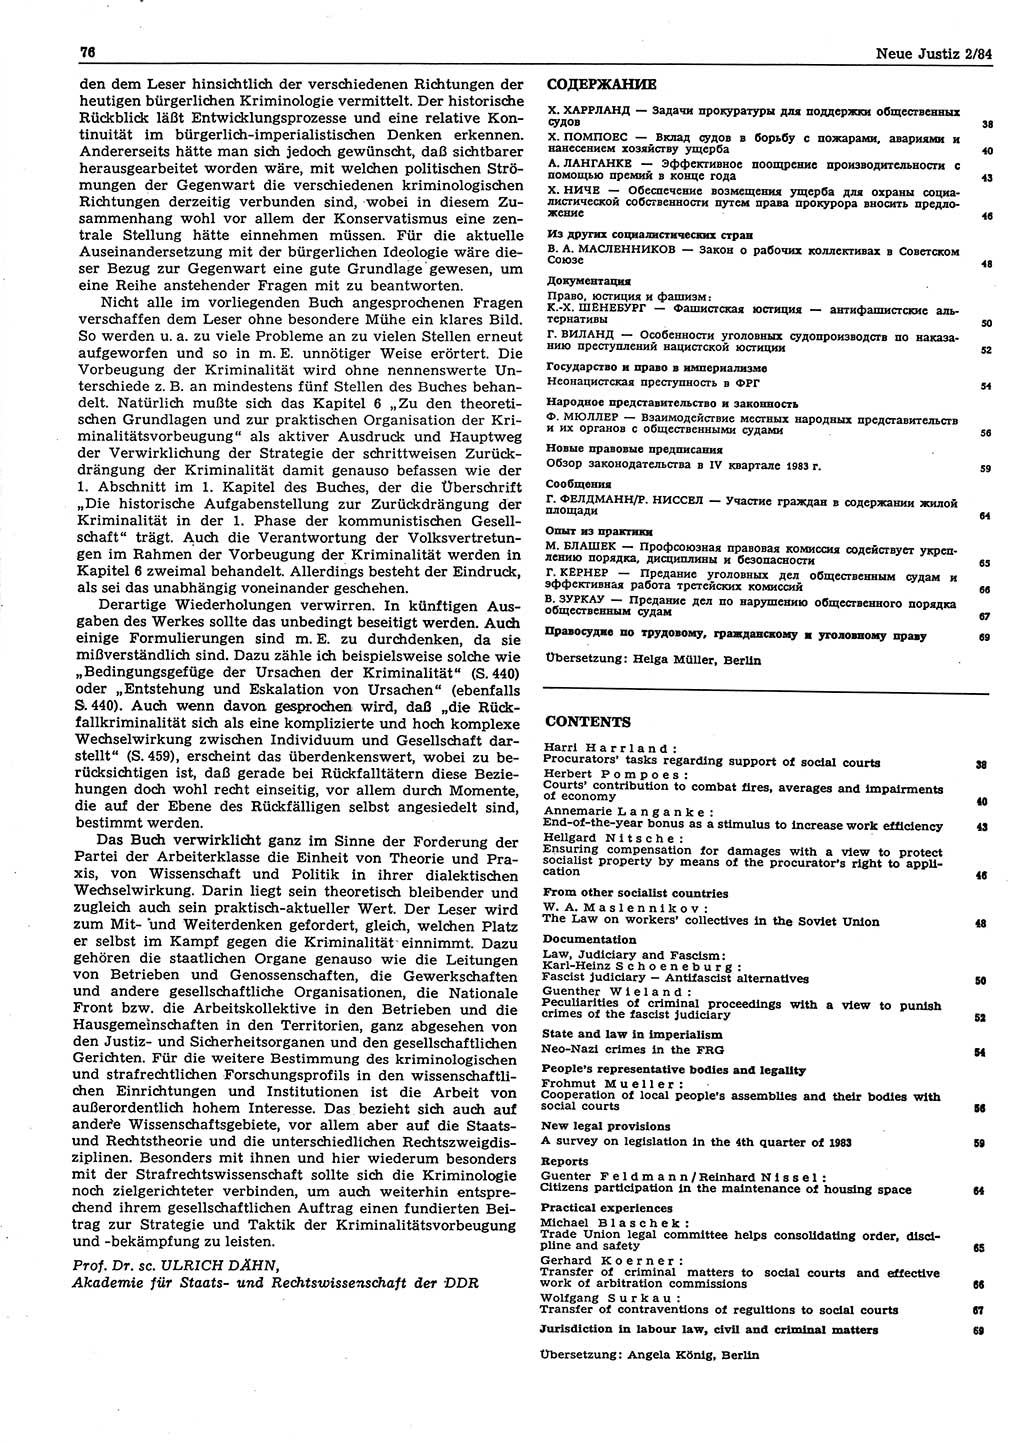 Neue Justiz (NJ), Zeitschrift für sozialistisches Recht und Gesetzlichkeit [Deutsche Demokratische Republik (DDR)], 38. Jahrgang 1984, Seite 76 (NJ DDR 1984, S. 76)